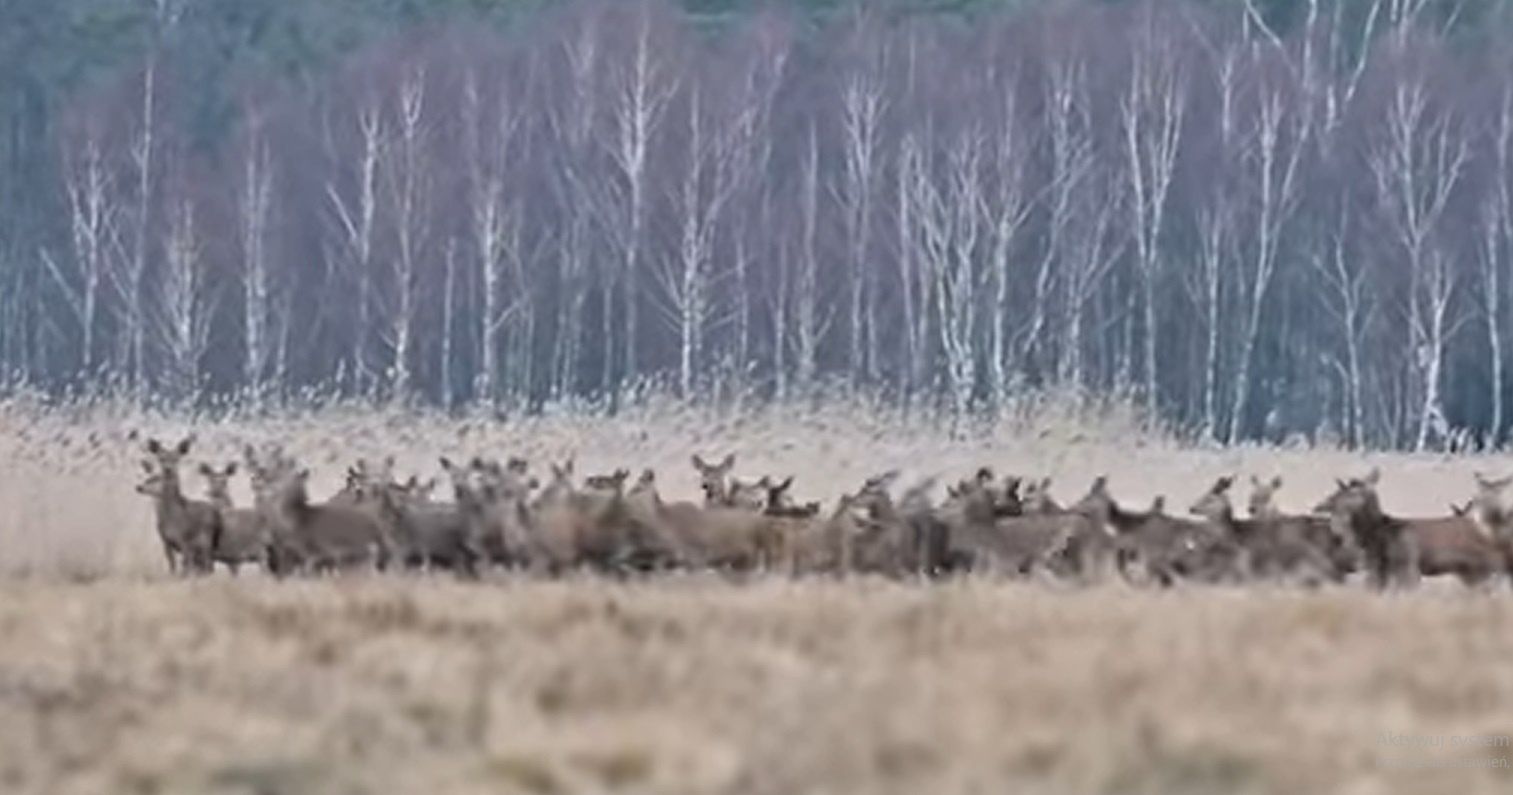 Ogromna chmara jeleni w jednym kadrze! Niezwykłe nagranie z Polski